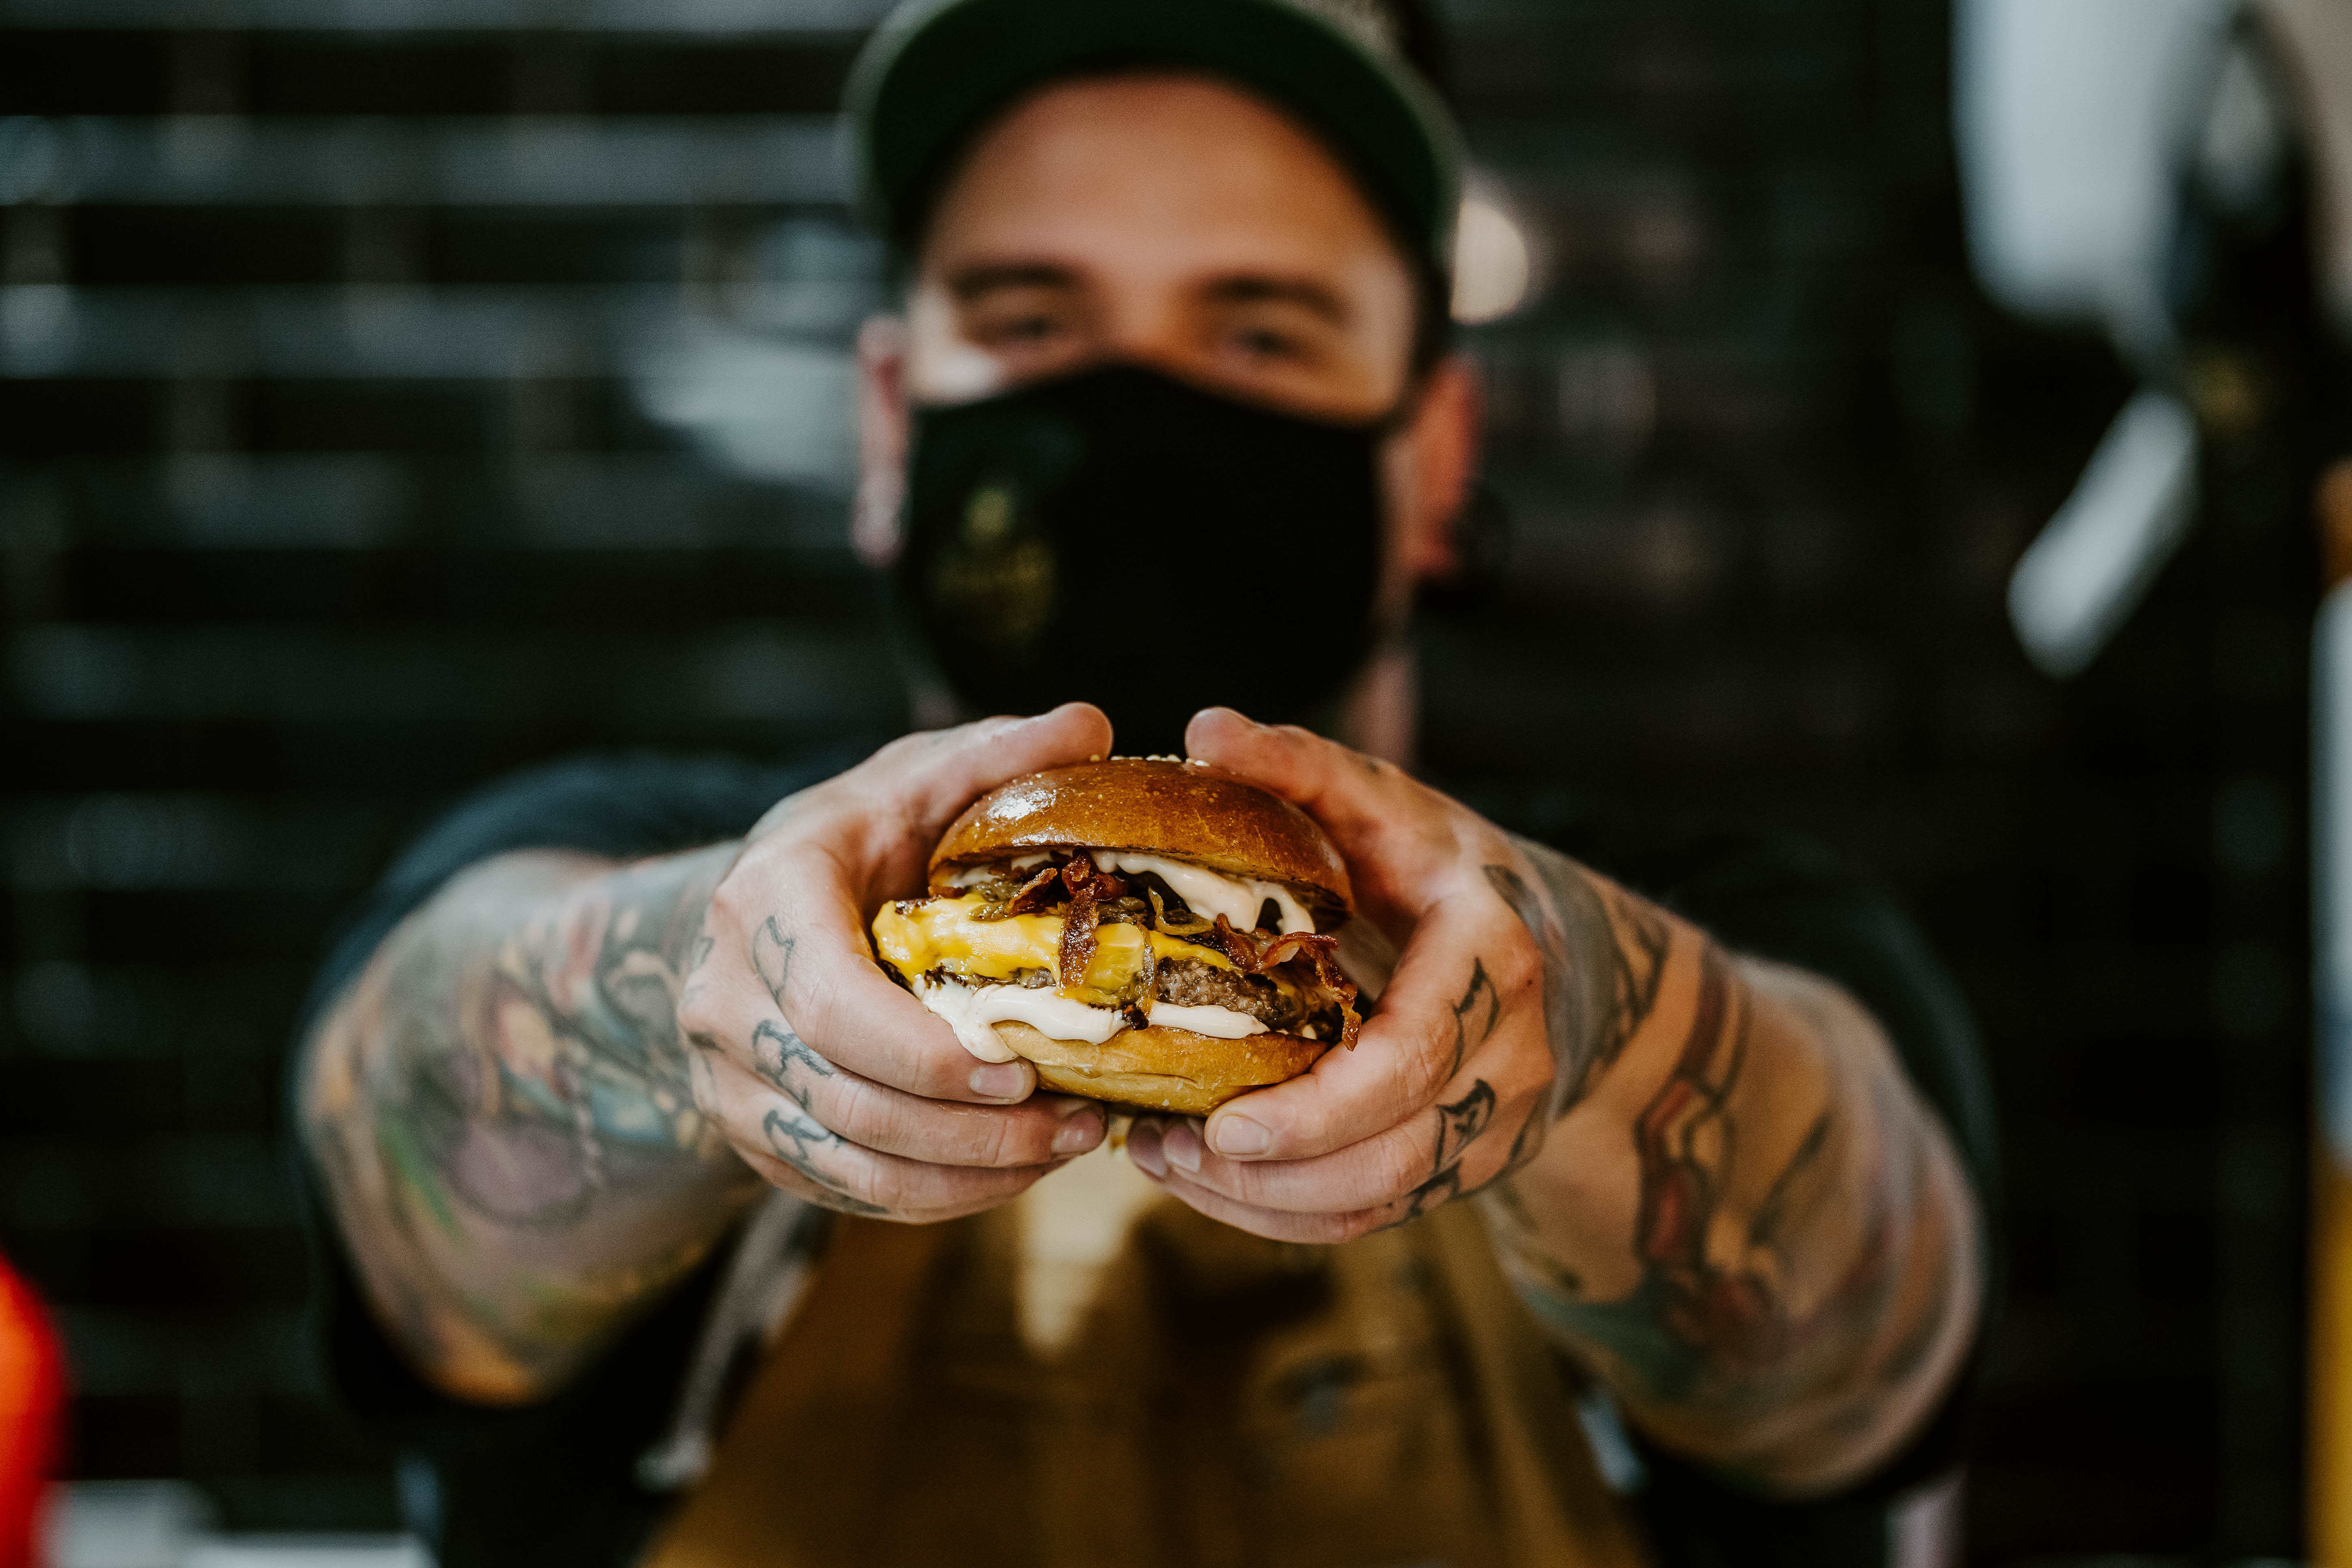 A hely, ahol hardcore punkra készül a tépett malachúsos burger – Teszteltük a Bitang Burgert